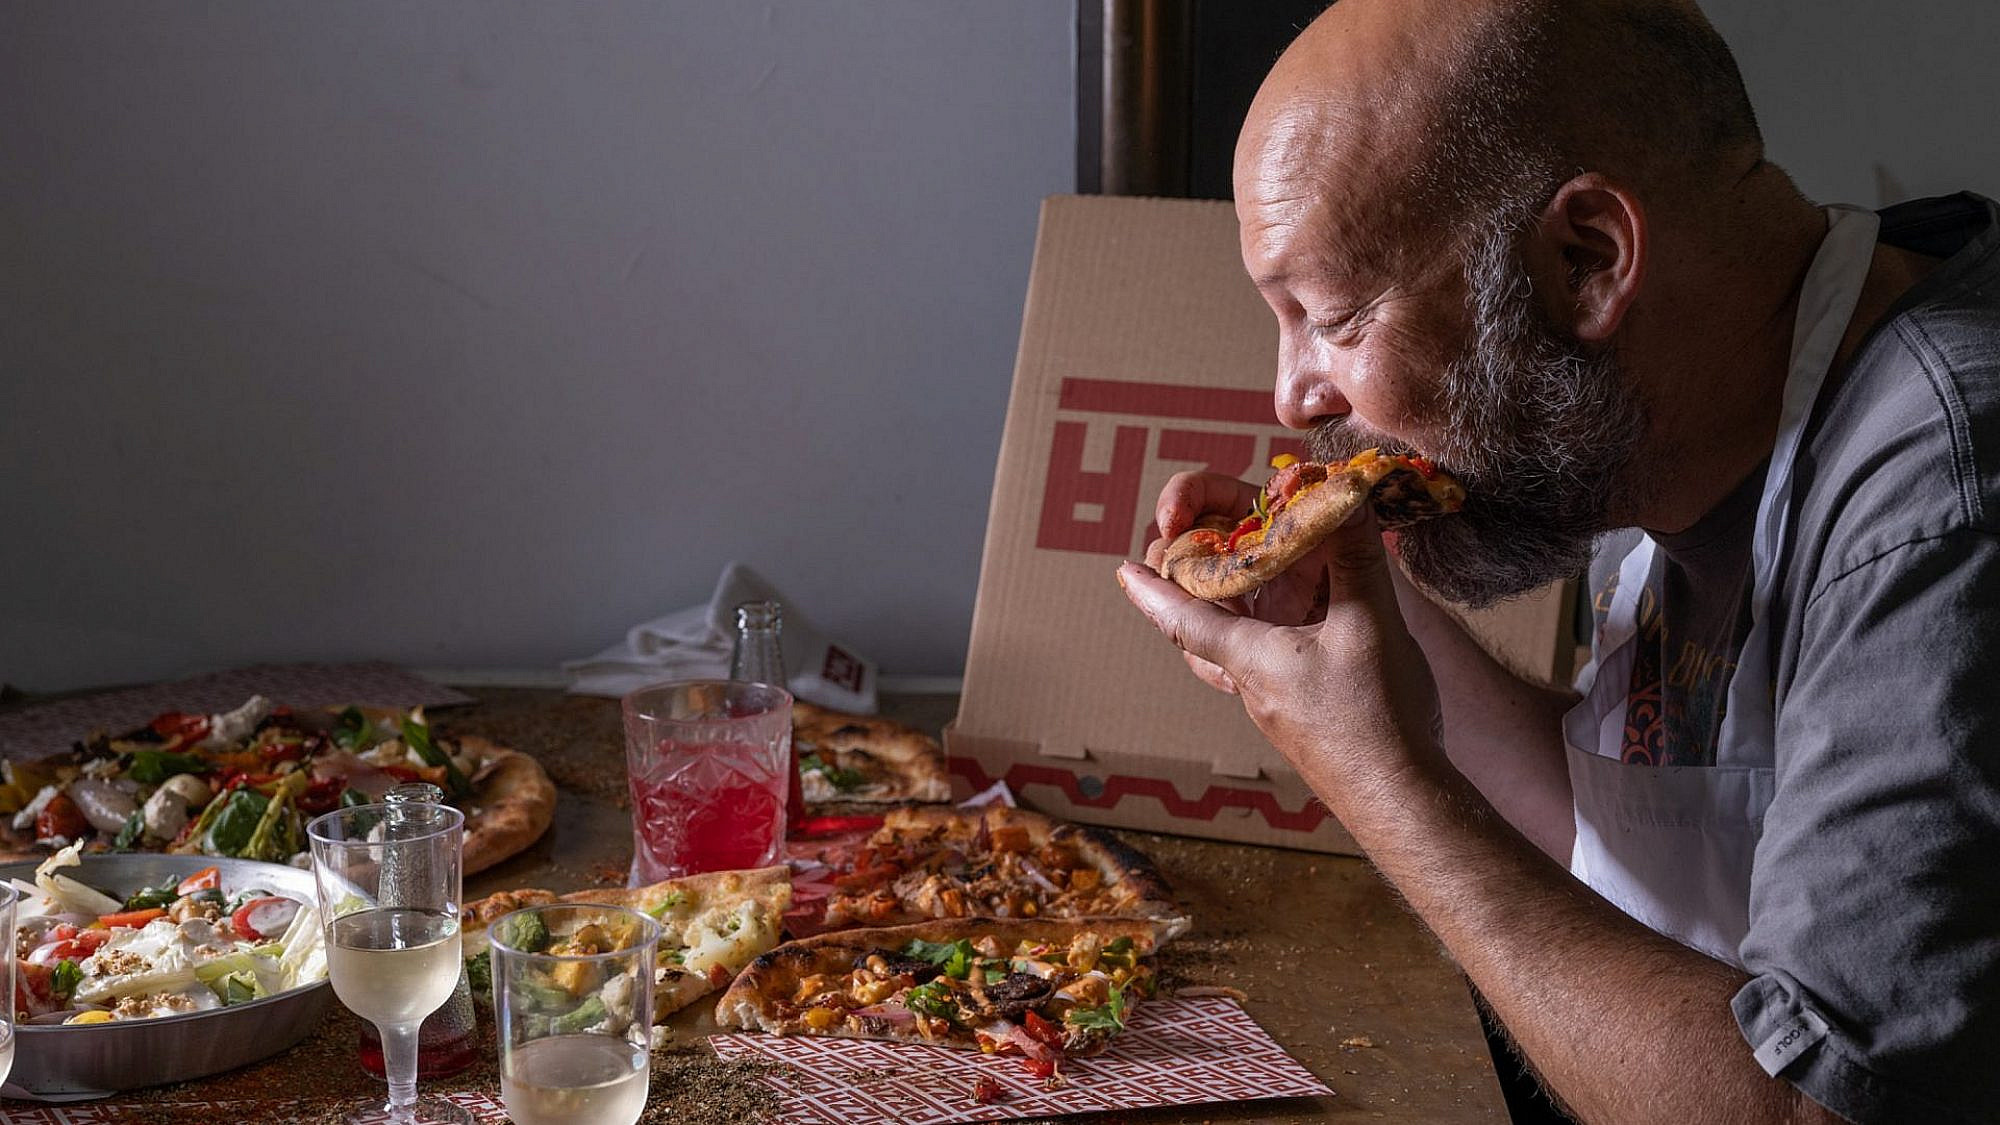 ביי ביי פיצה, הלו ארוחה ב-450 שקל. יונתן רושפלד (צילום: אנטולי מיכאלו)